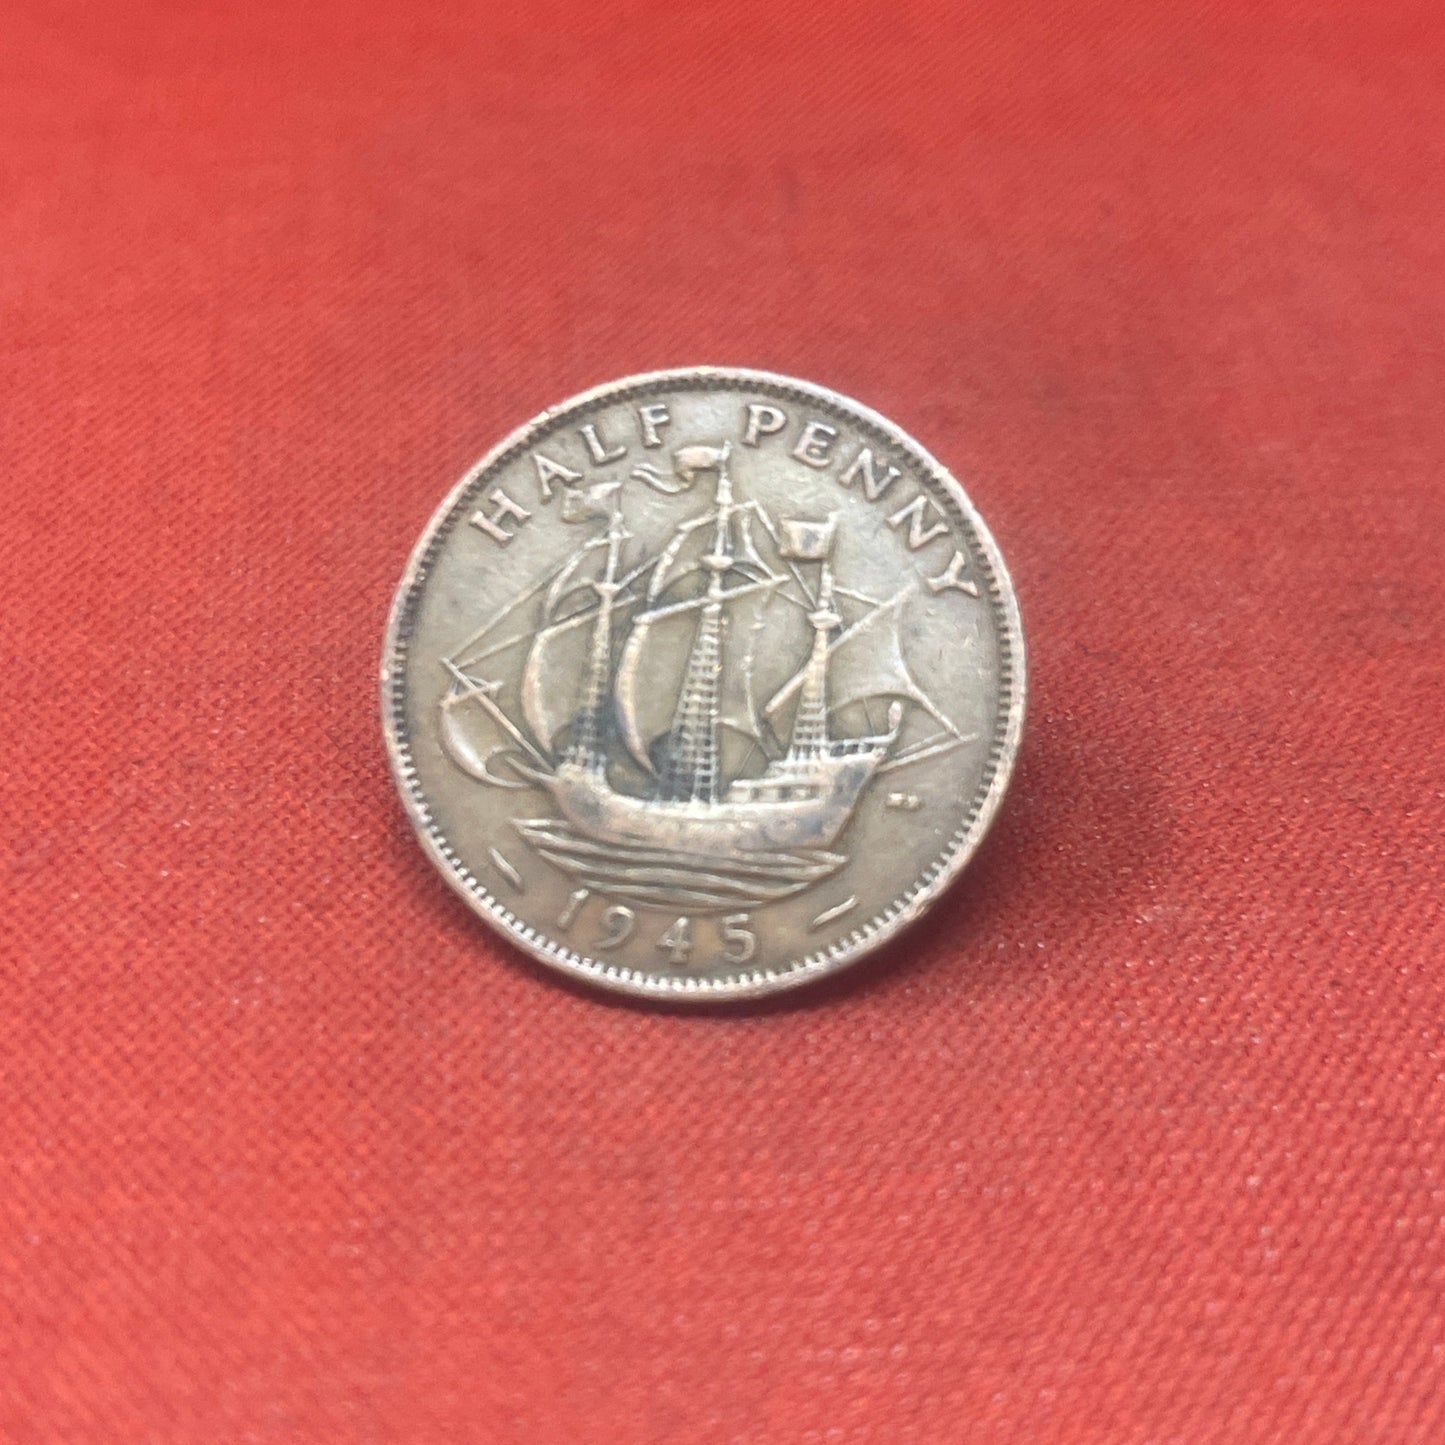 King George VI 1945 Half Penny